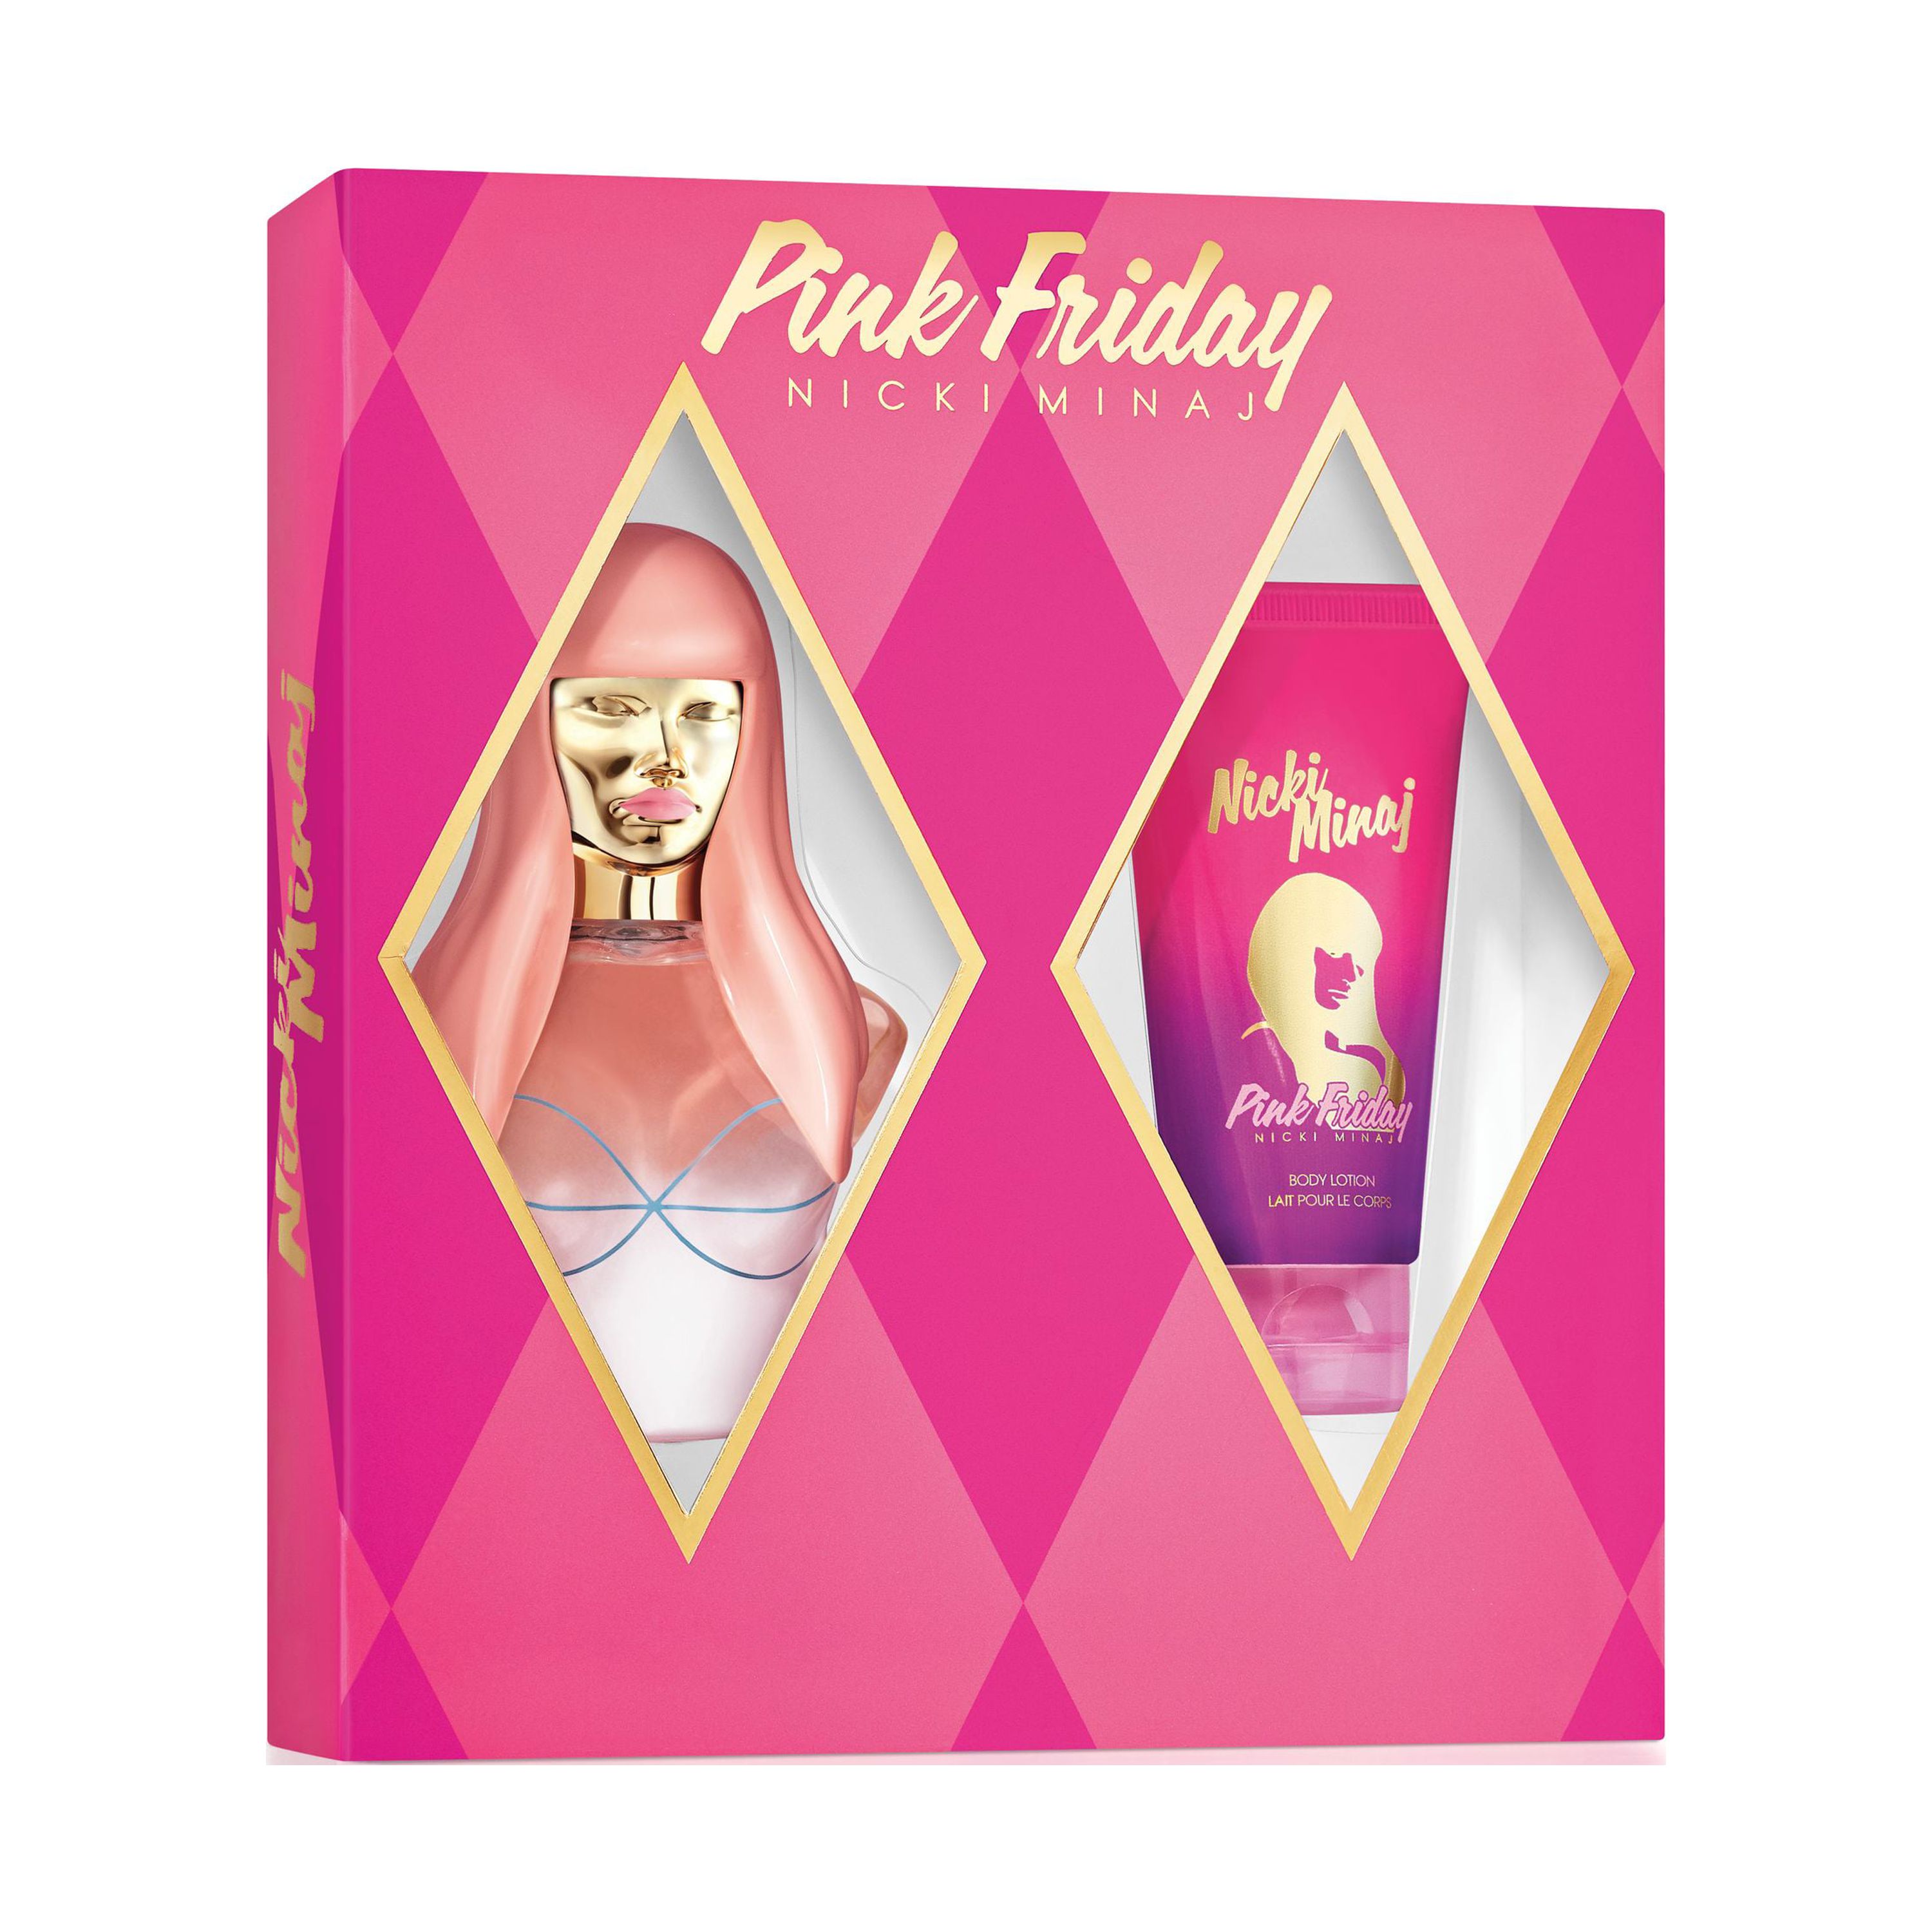 Nicki Minaj Pink Friday Fragrance Gift Set for Women, 2 pc - image 1 of 1